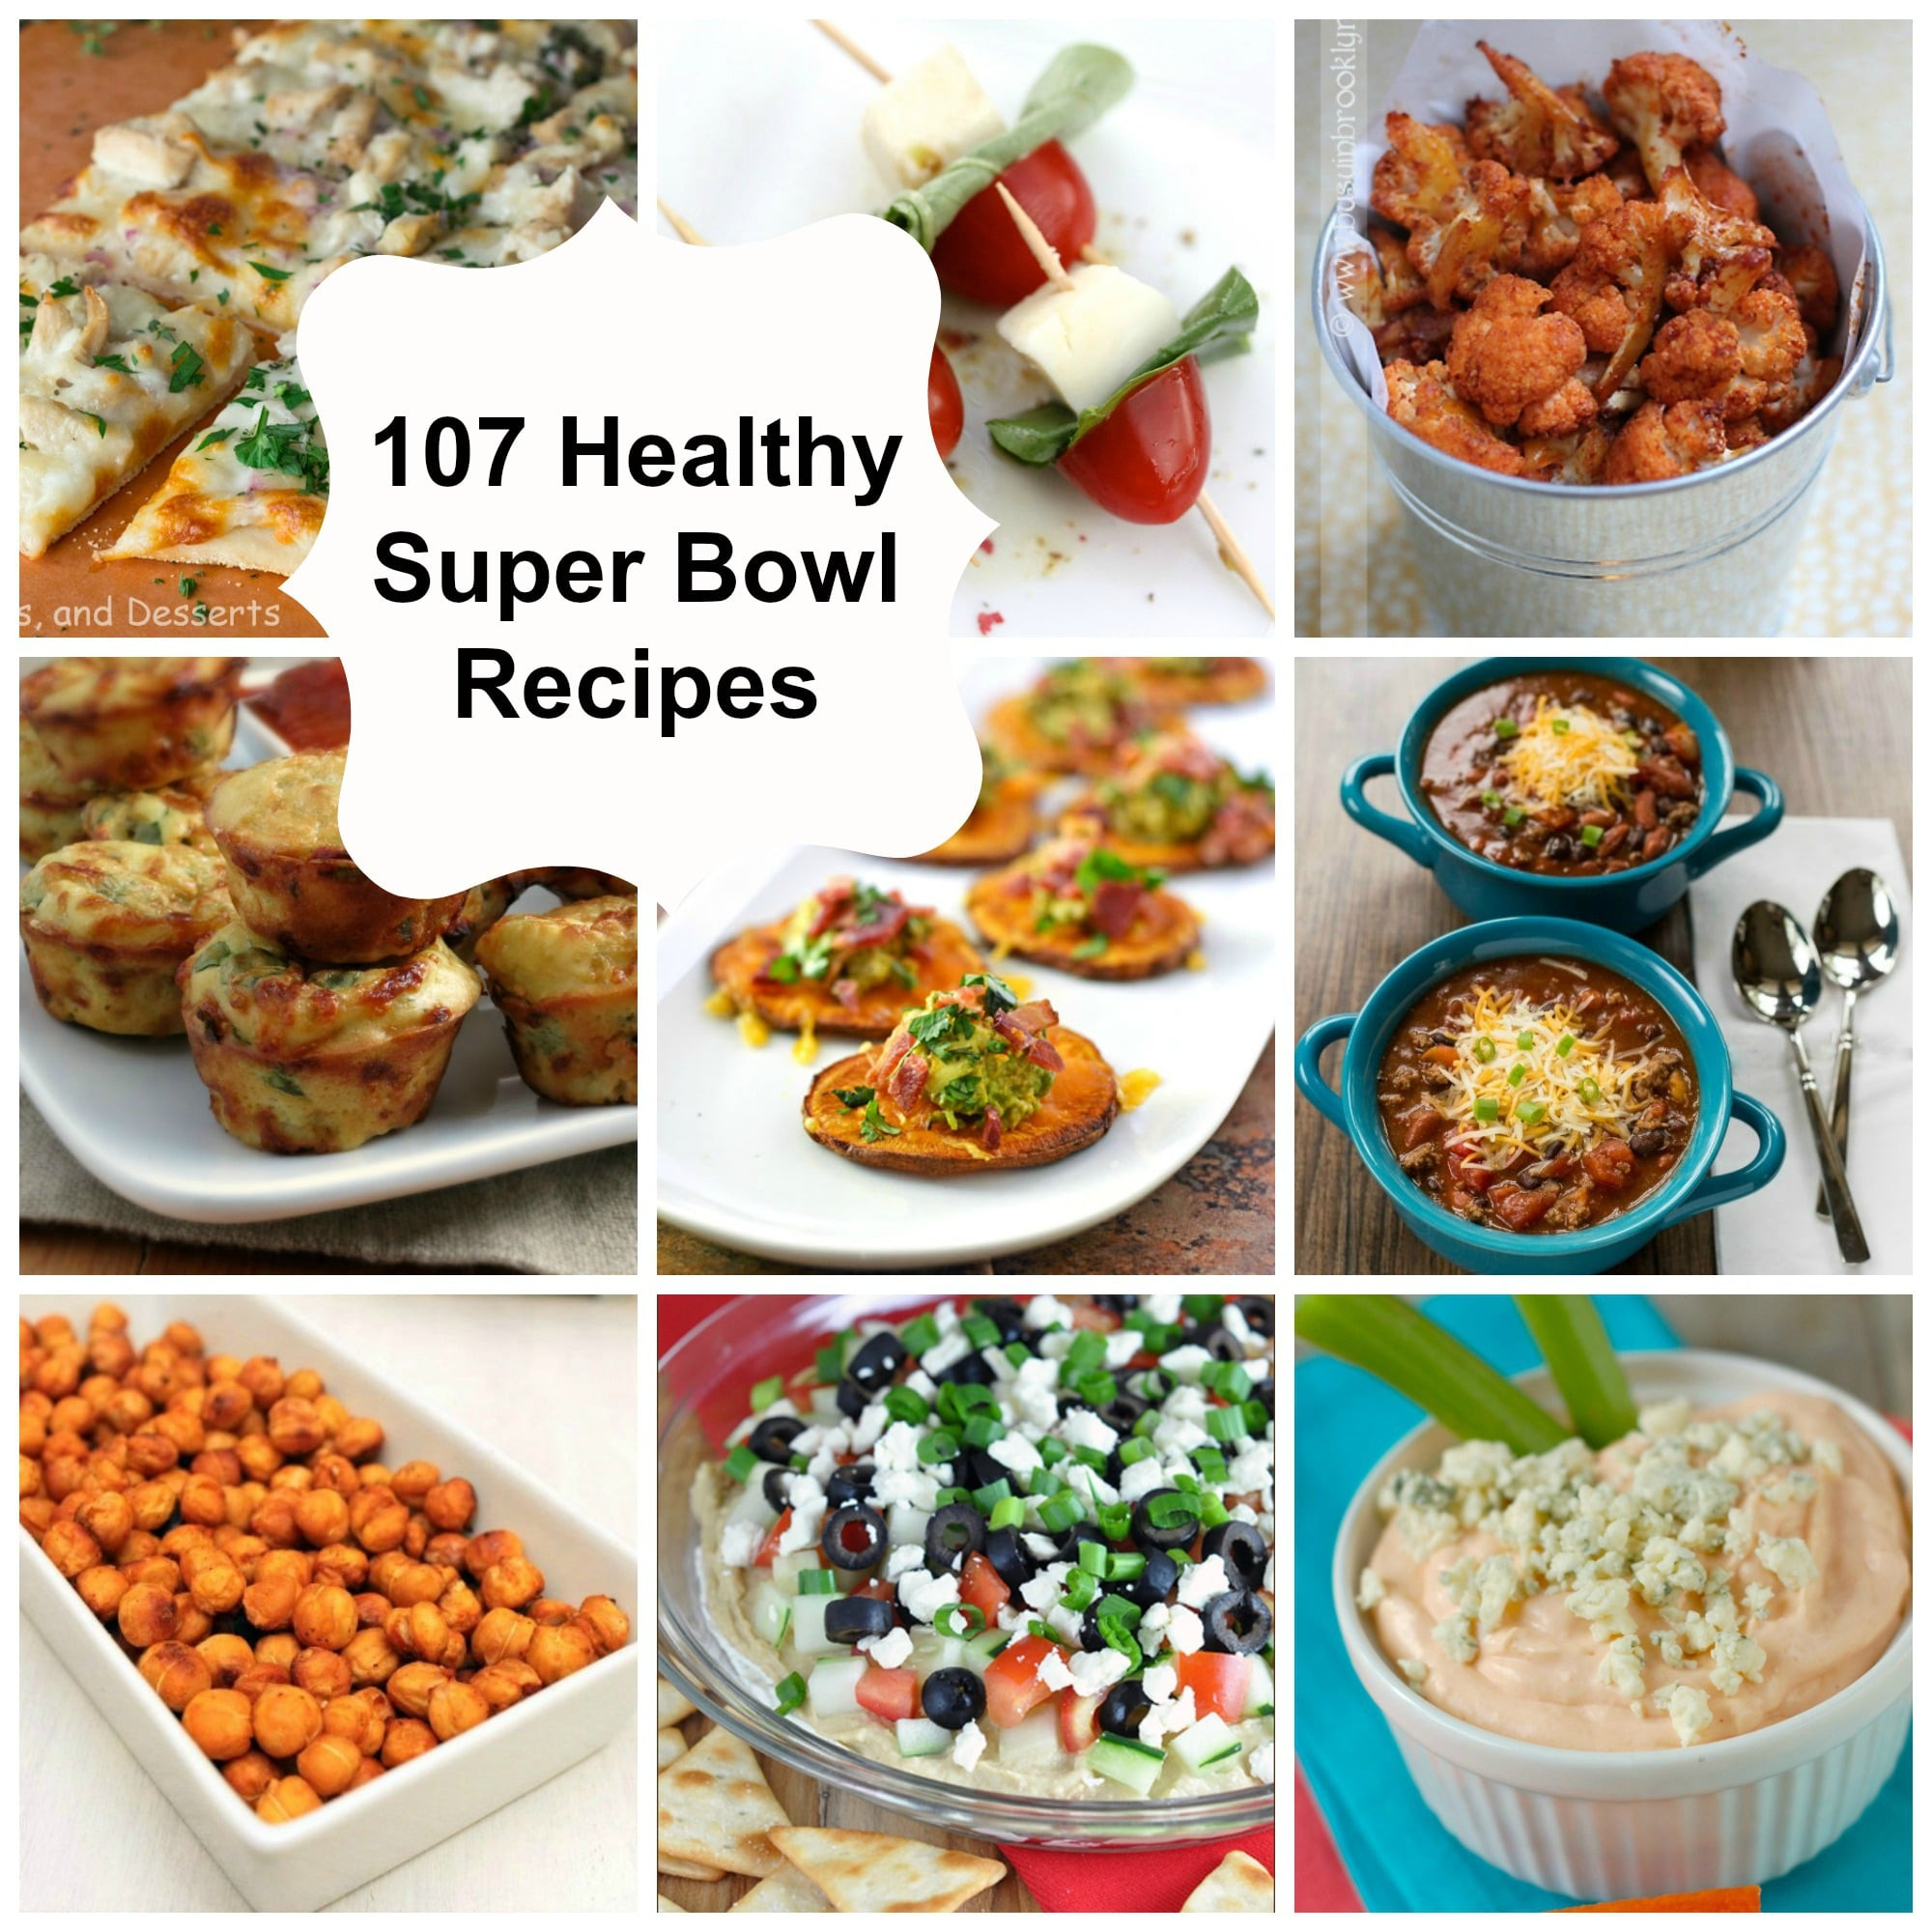 Super Bowl Recipes Healthy
 107 Healthy Super Bowl Recipes A Cedar Spoon